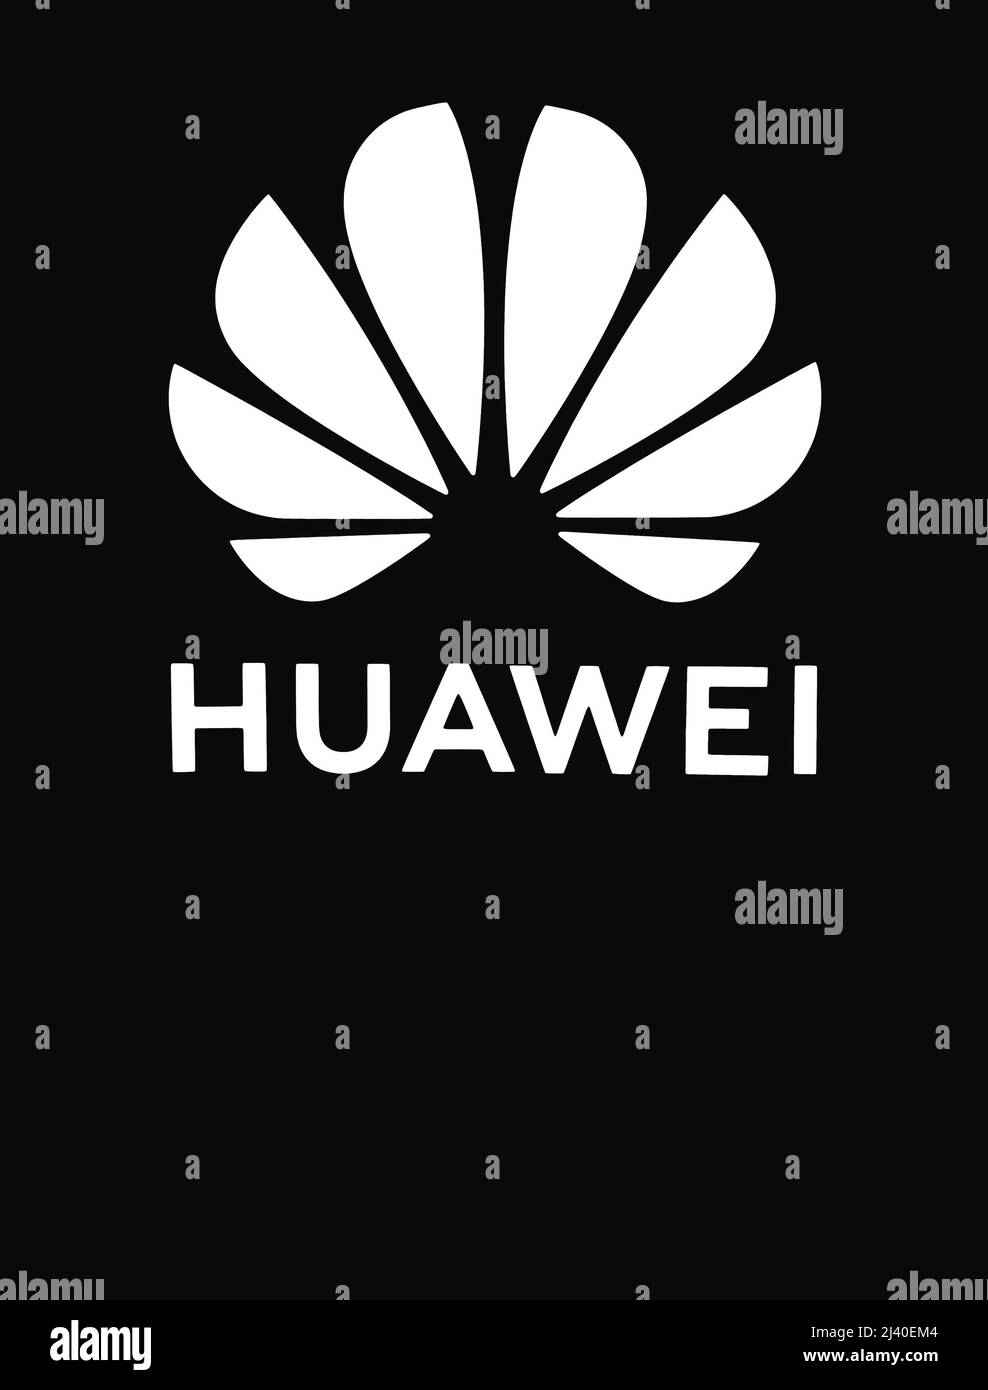 Huawei logo Imágenes de stock en blanco y negro - Alamy